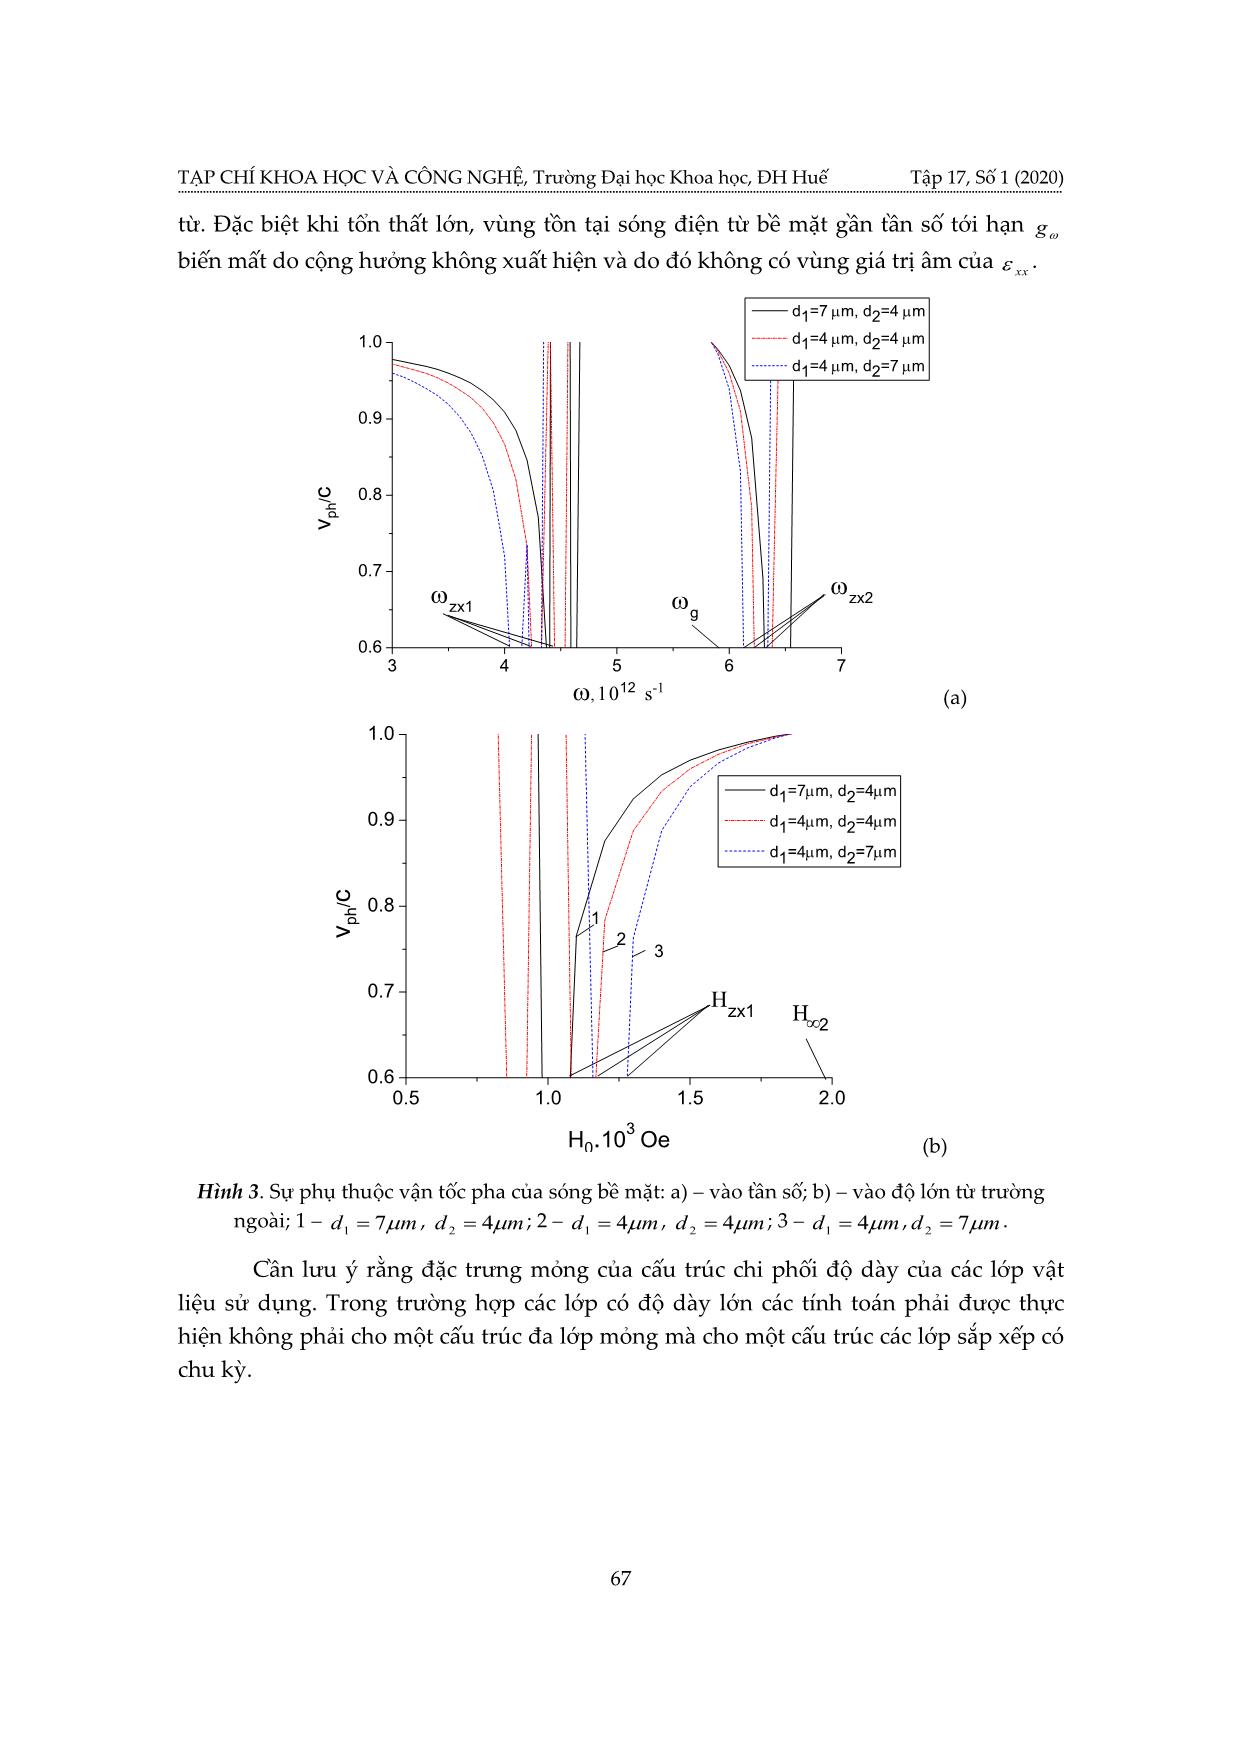 Sóng điện từ bề mặt trong cấu trúc đa lớp mỏng sắp xếp có chu kỳ trang 7